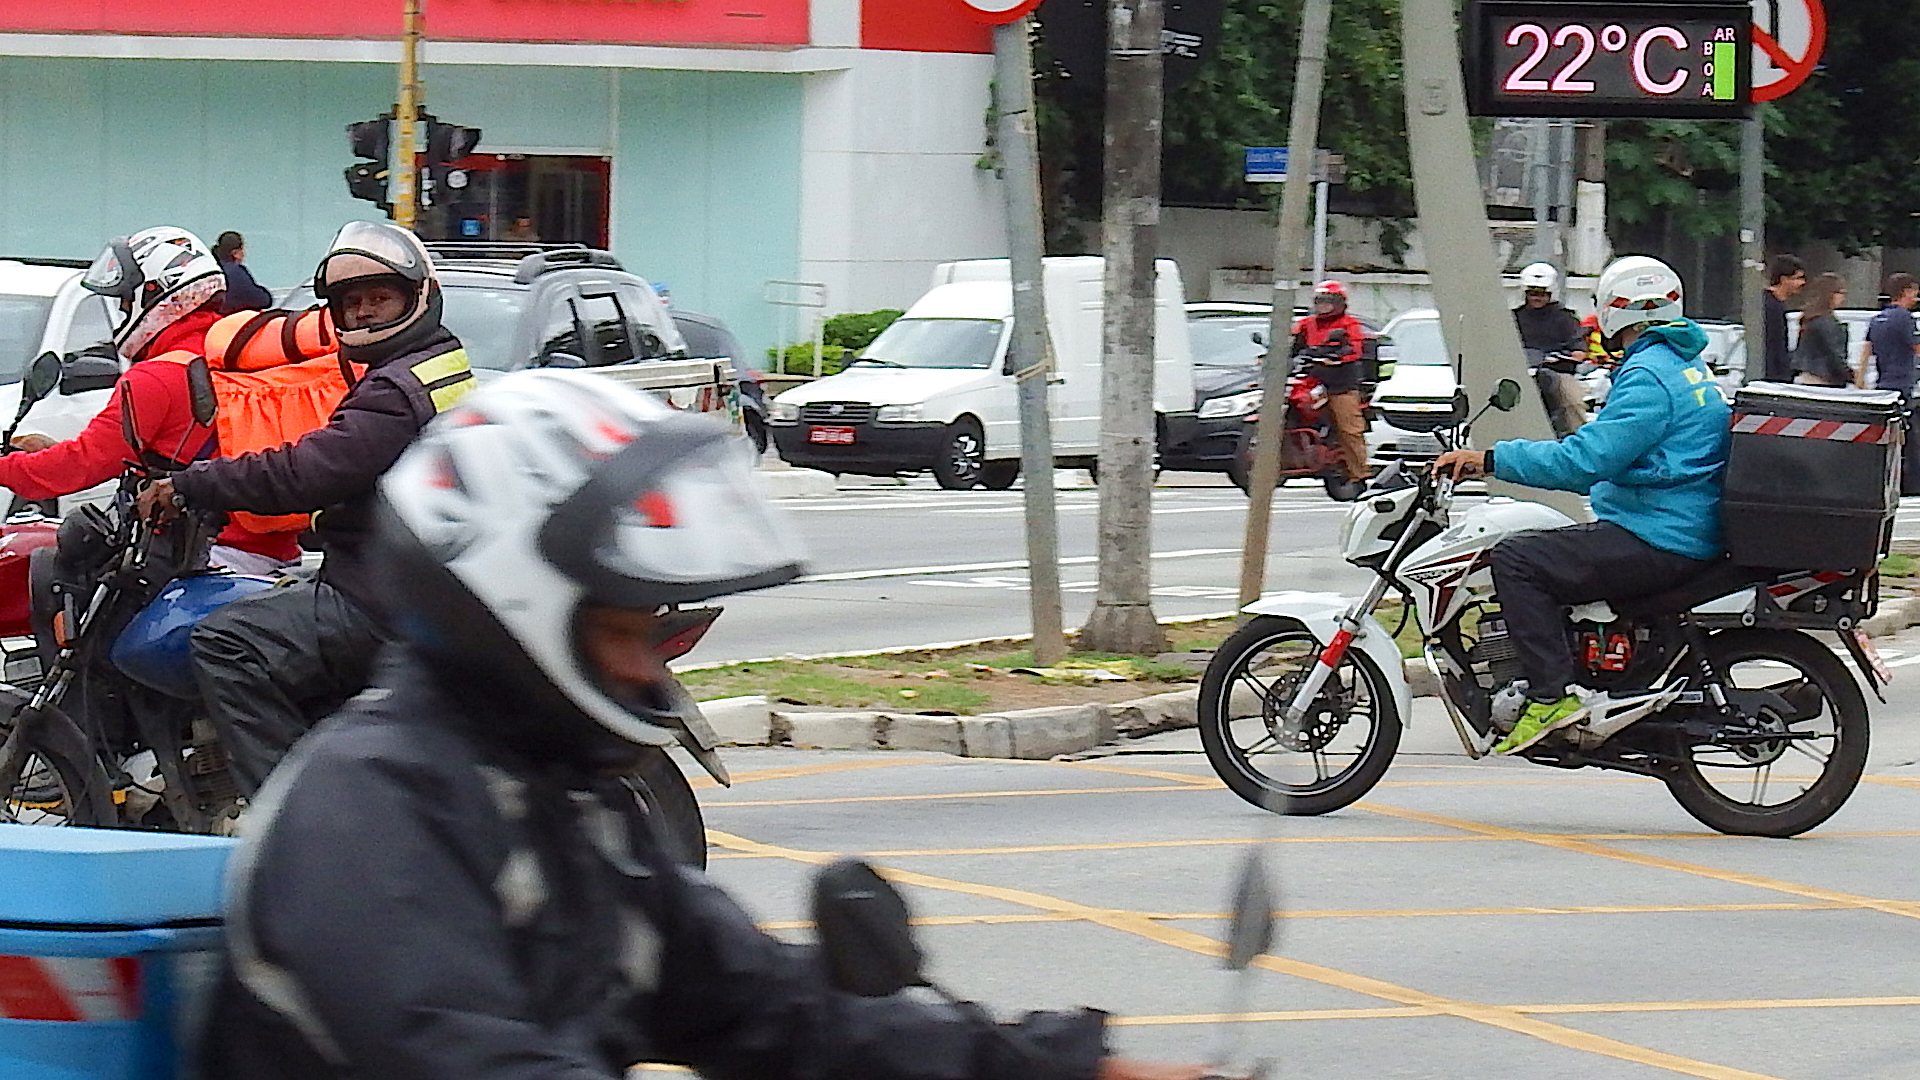 Moto Honda para Trabalhar nas ruas